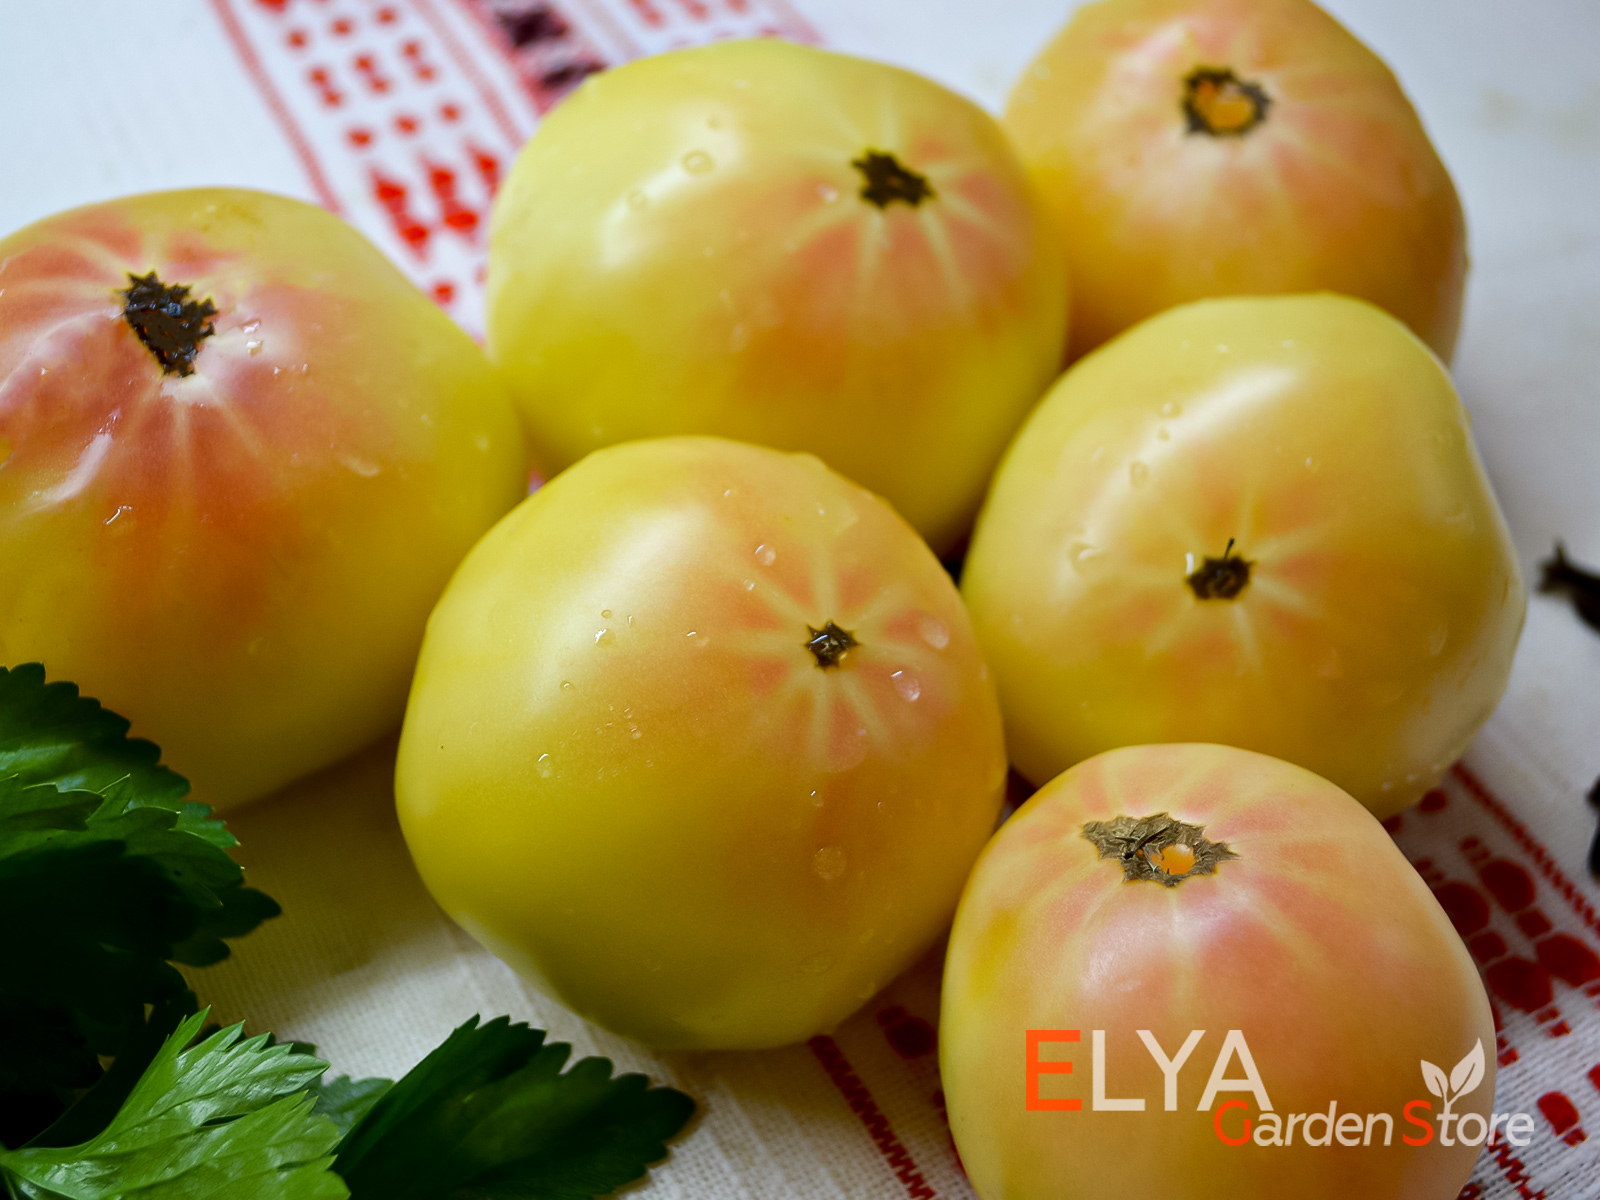 лебединая песня - коллекционный сорт томата с отличным нежным вкусом - семена в магазине Elya Garden